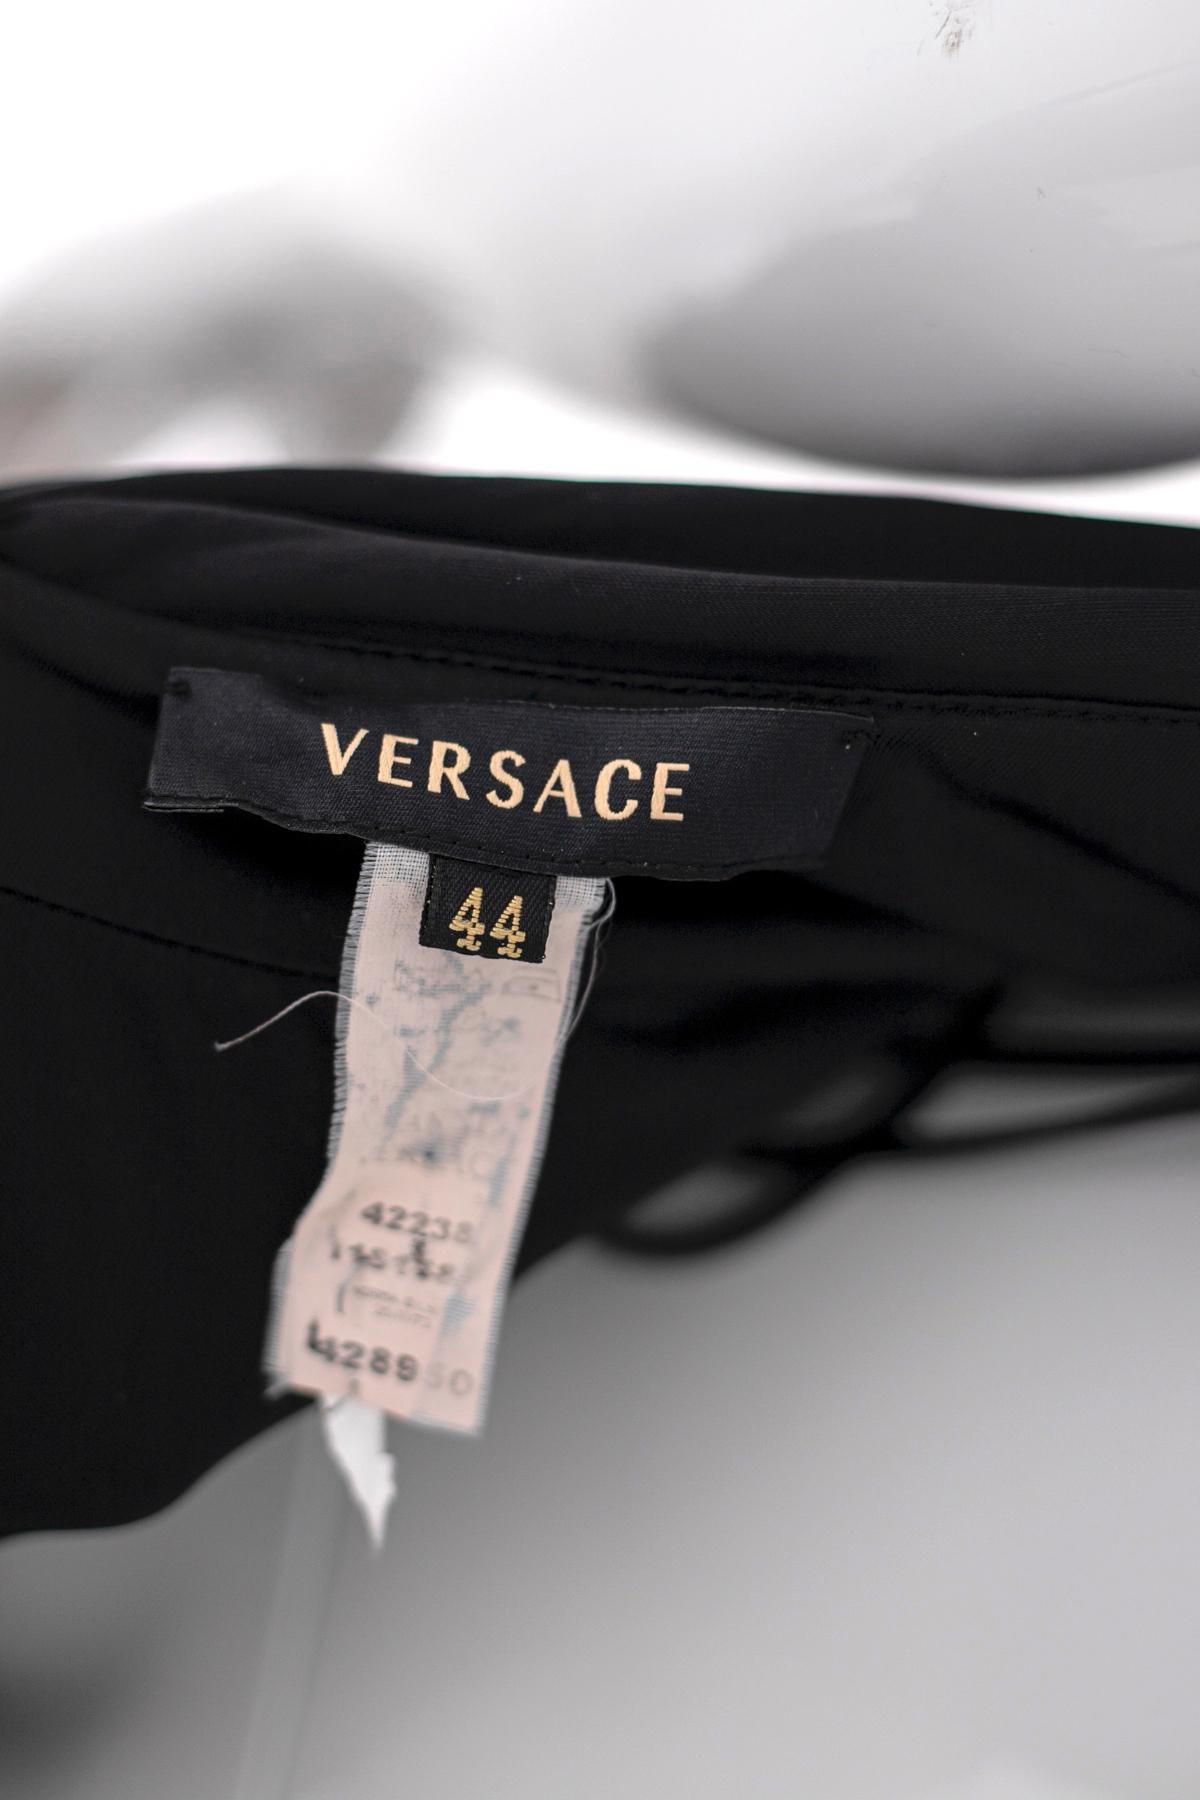 Wunderschönes schwarzes kurzes Abendkleid des berühmten Designers Gianni Versace aus den 1990er Jahren, aus sehr weichem Viscosa 100%.
Das Kleid hat einen offenen Rücken und einen Ausschnitt im amerikanischen Stil mit einem goldenen Metallband, im